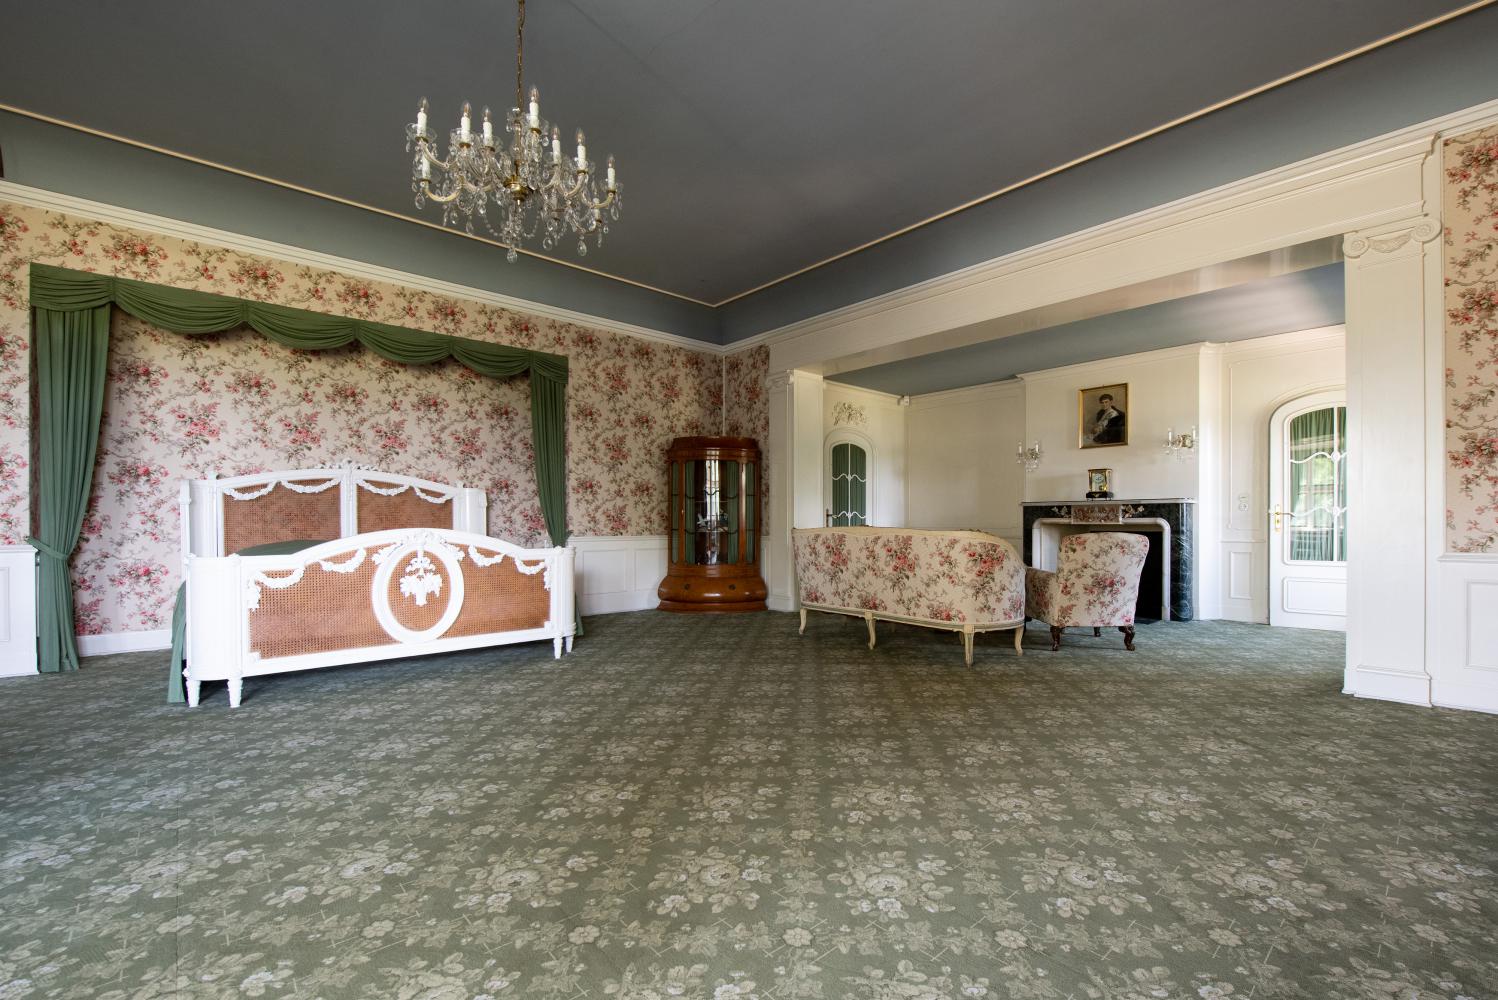 Das Schlafzimmer im einstigen Preußen-Schloss Cecilienhof. Die letzten Bewohner des Hauses waren Kronprinz Wilhelm und Cecilie von Hohenzollern, die zum Ende des Zweiten Weltkrieges auszogen